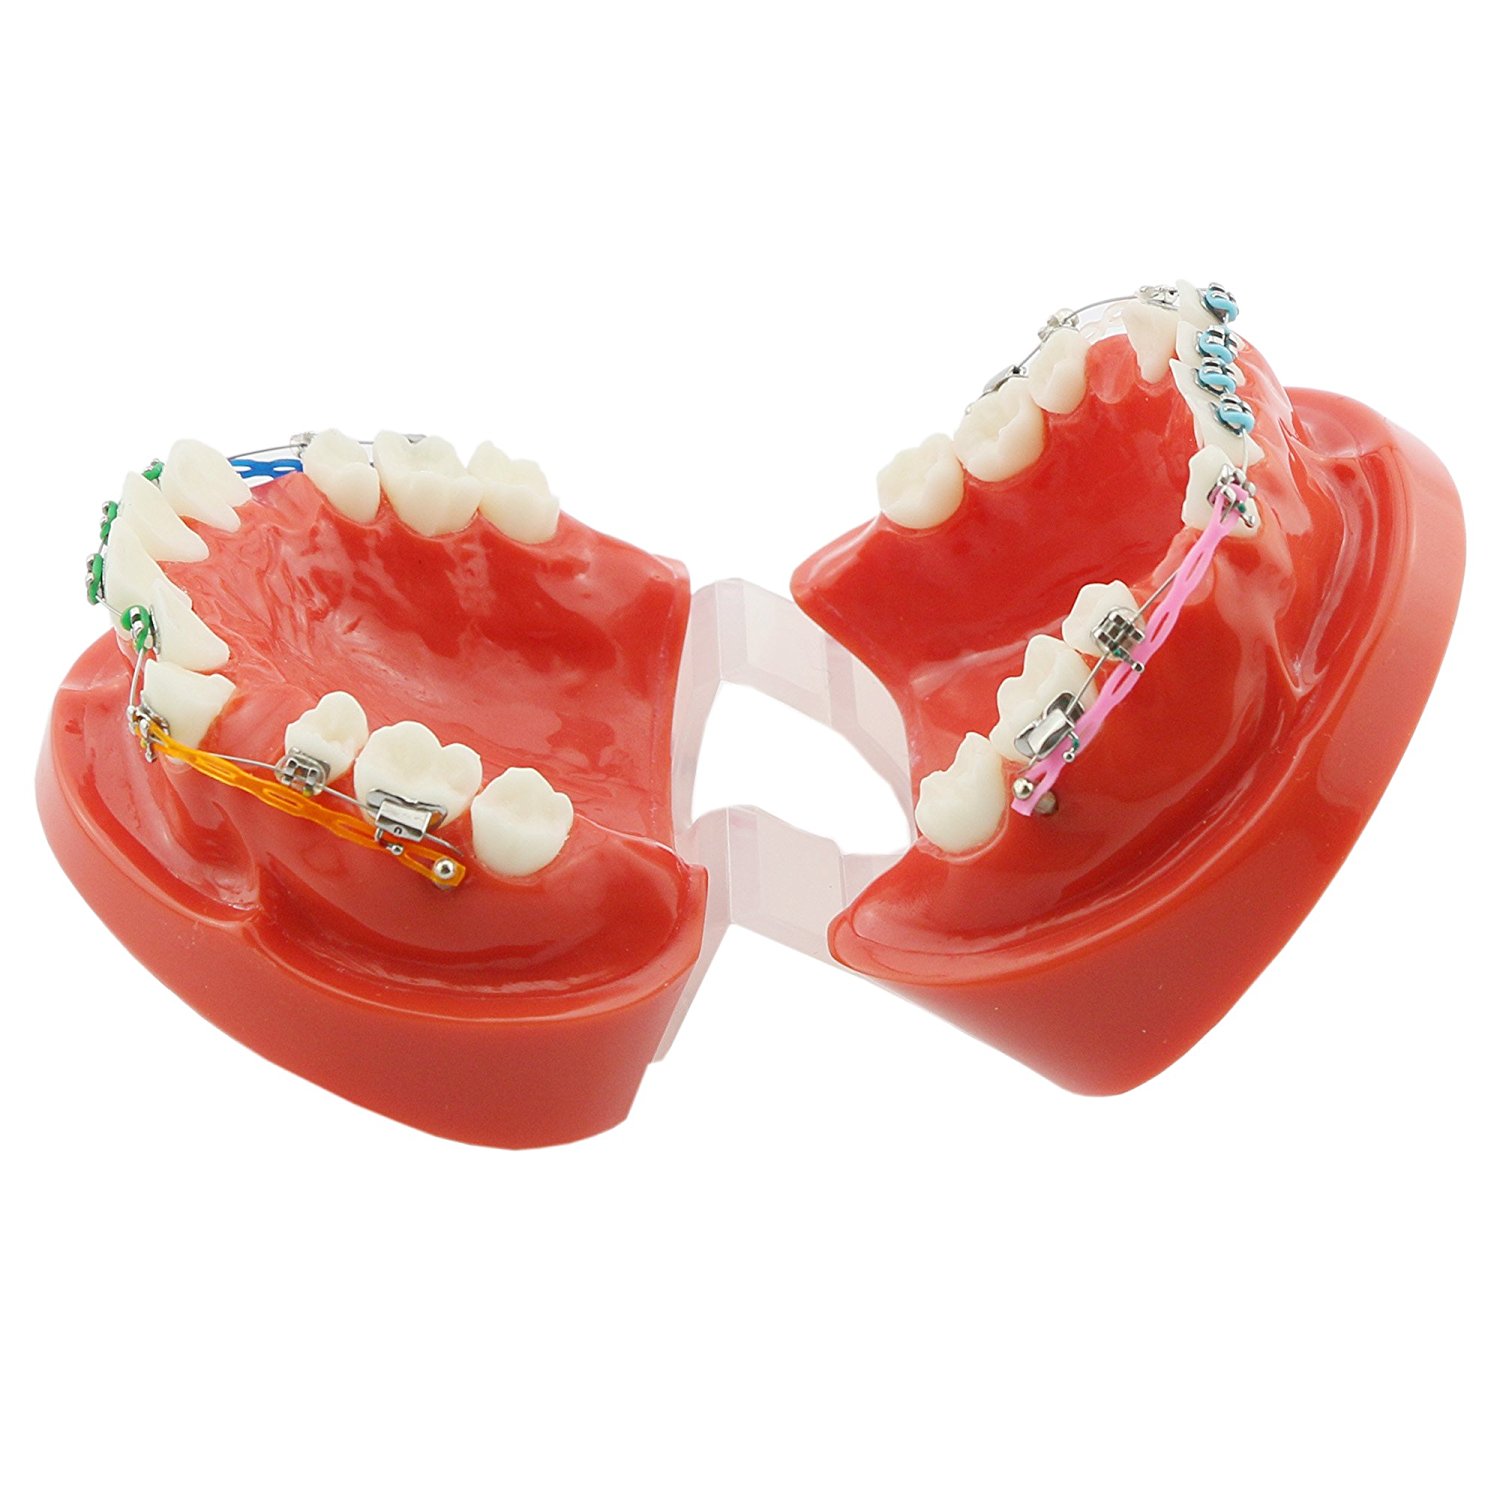 歯科上下顎180度開閉式歯列矯正模型 矯正歯科治療用研究用 ブラケット